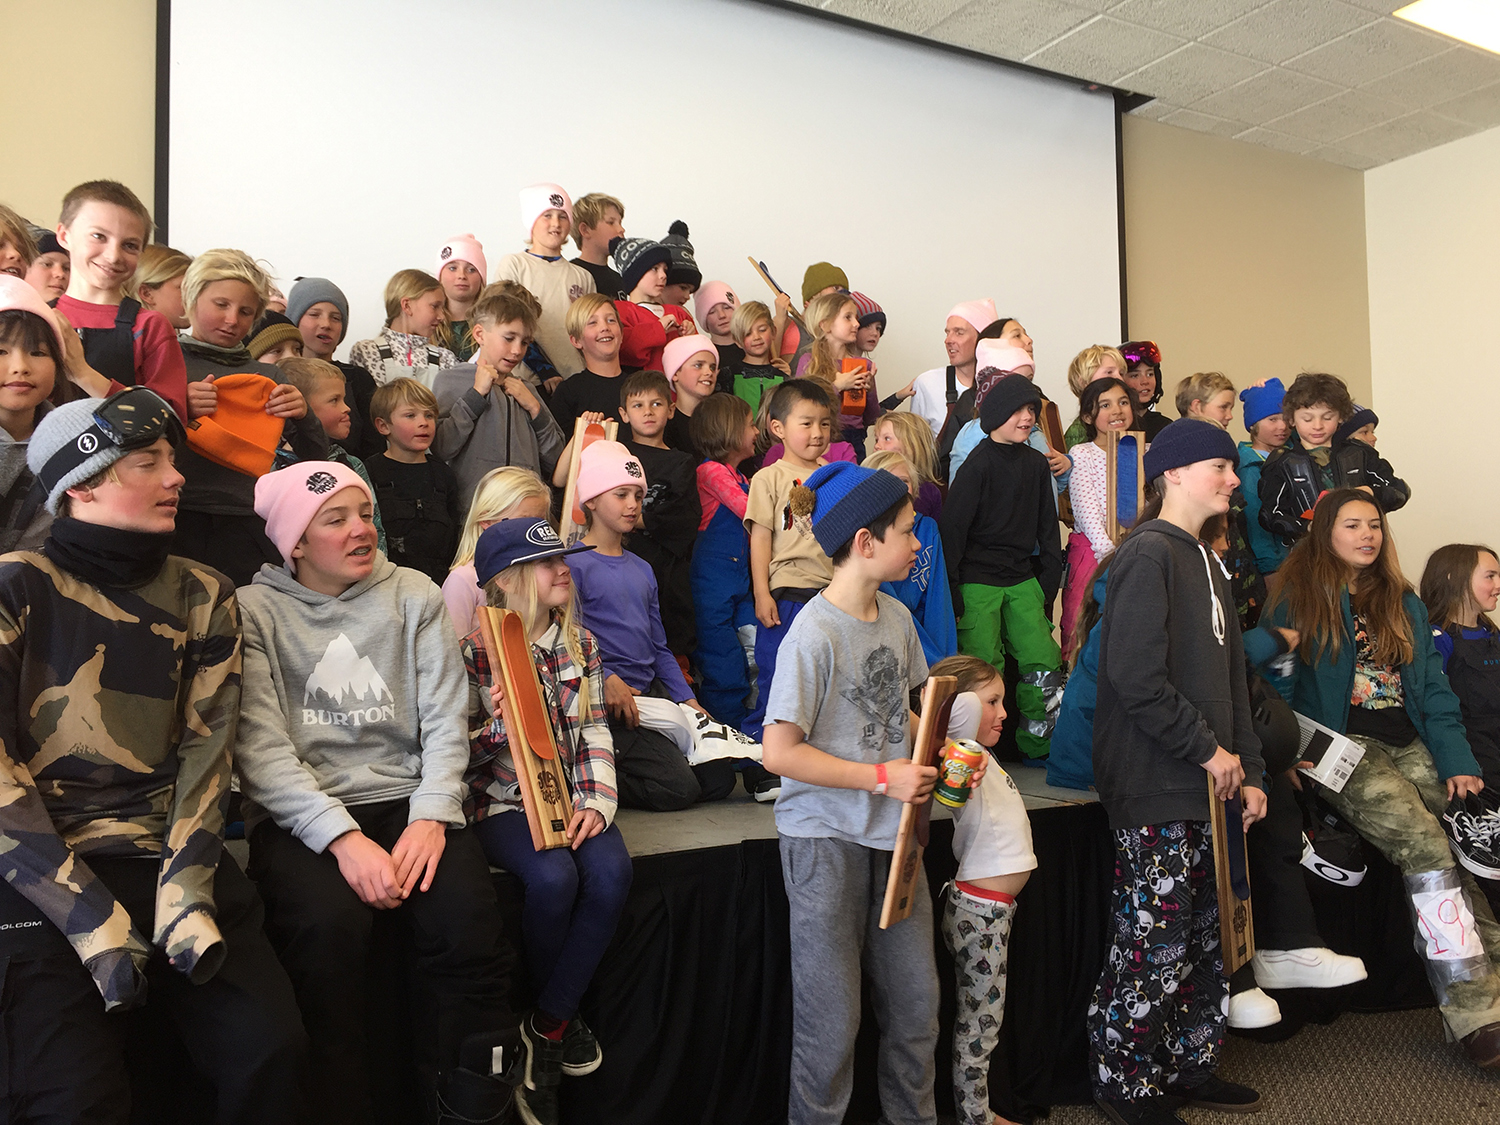 キッズクラスの子供たち。この子たちが明るいスノーボード界の未来を創り、この大会の意味を深く感じて伝えていってくれることを願う